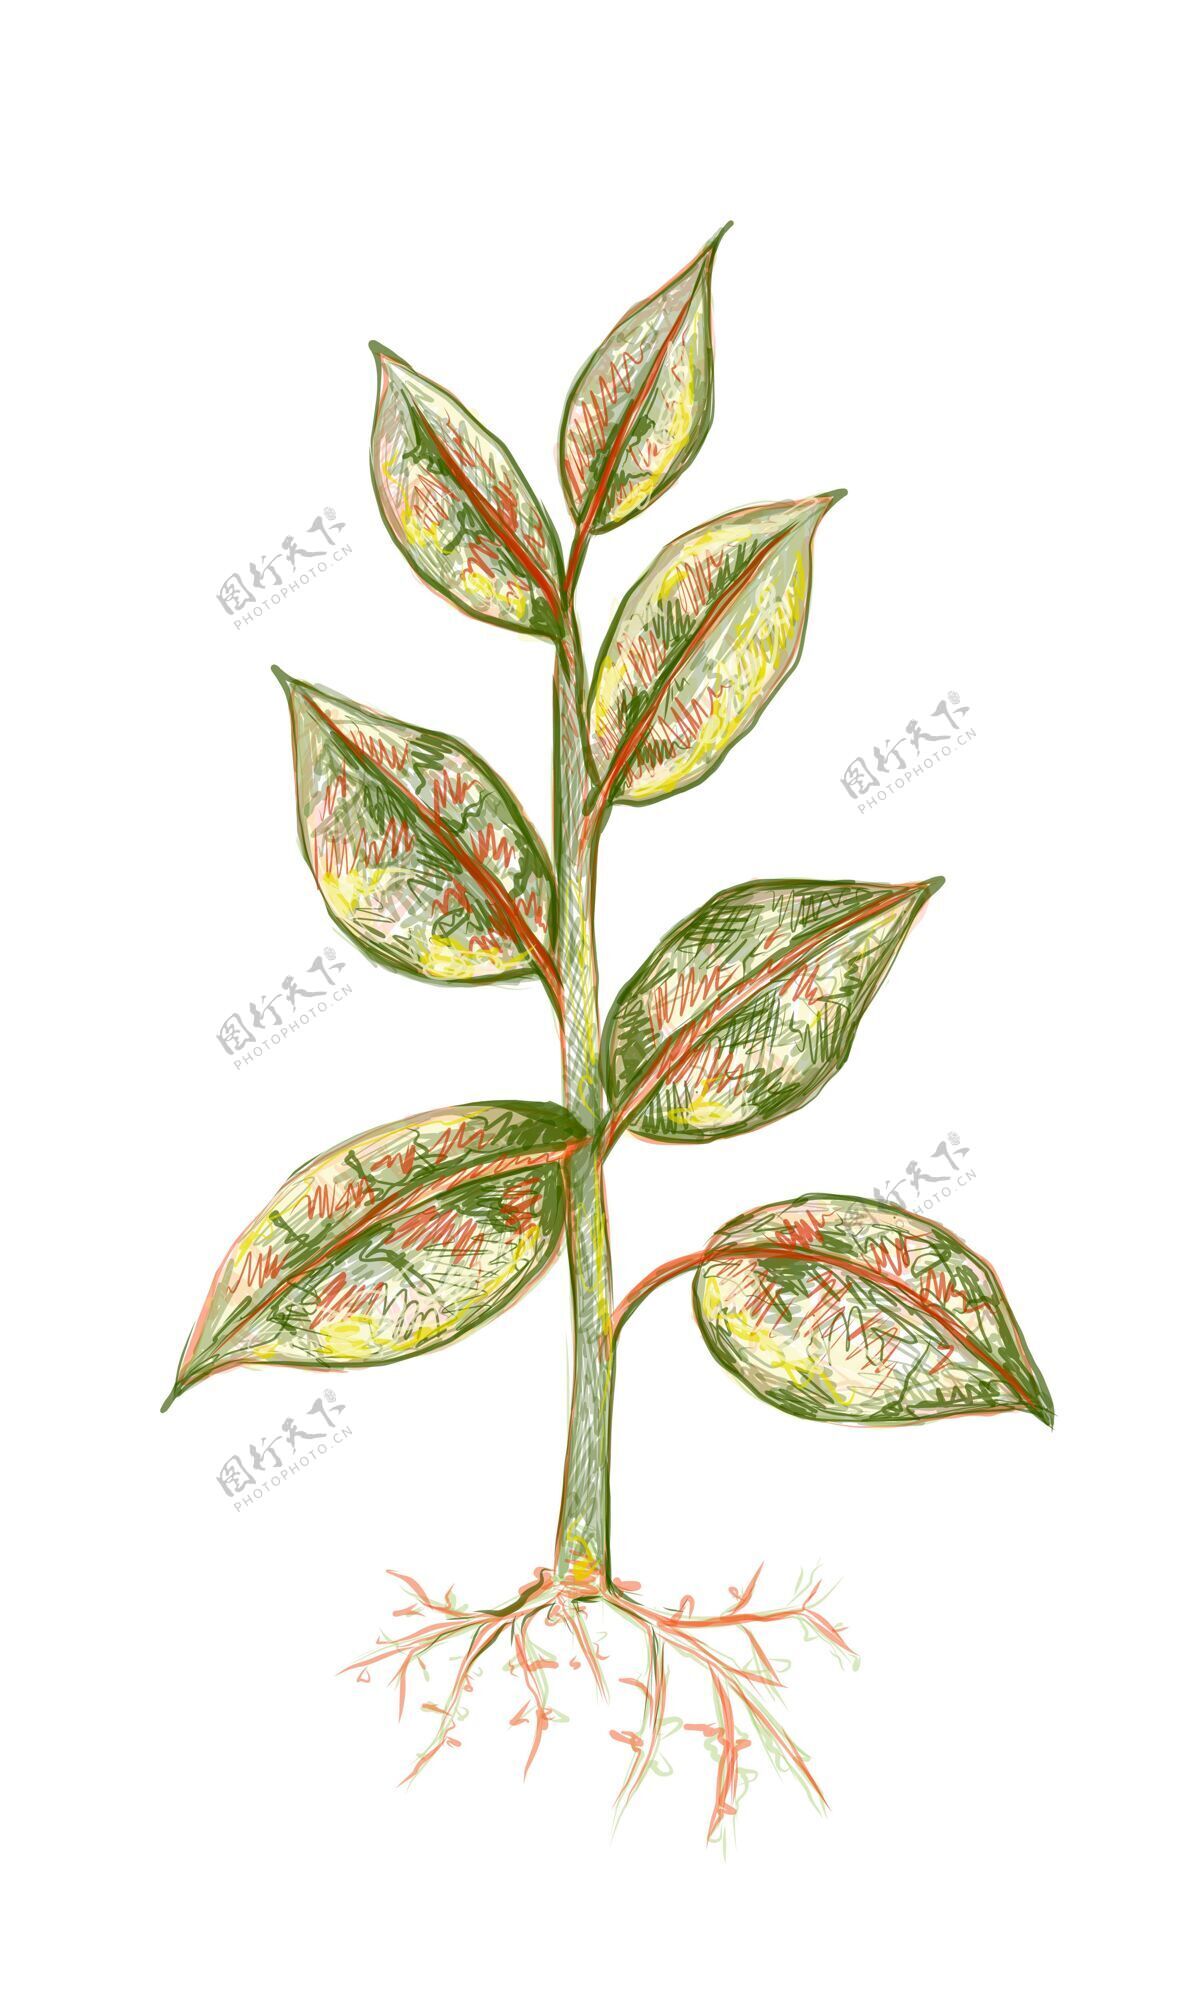 橡胶无花果或橡胶植物的插图植物常绿植物分支